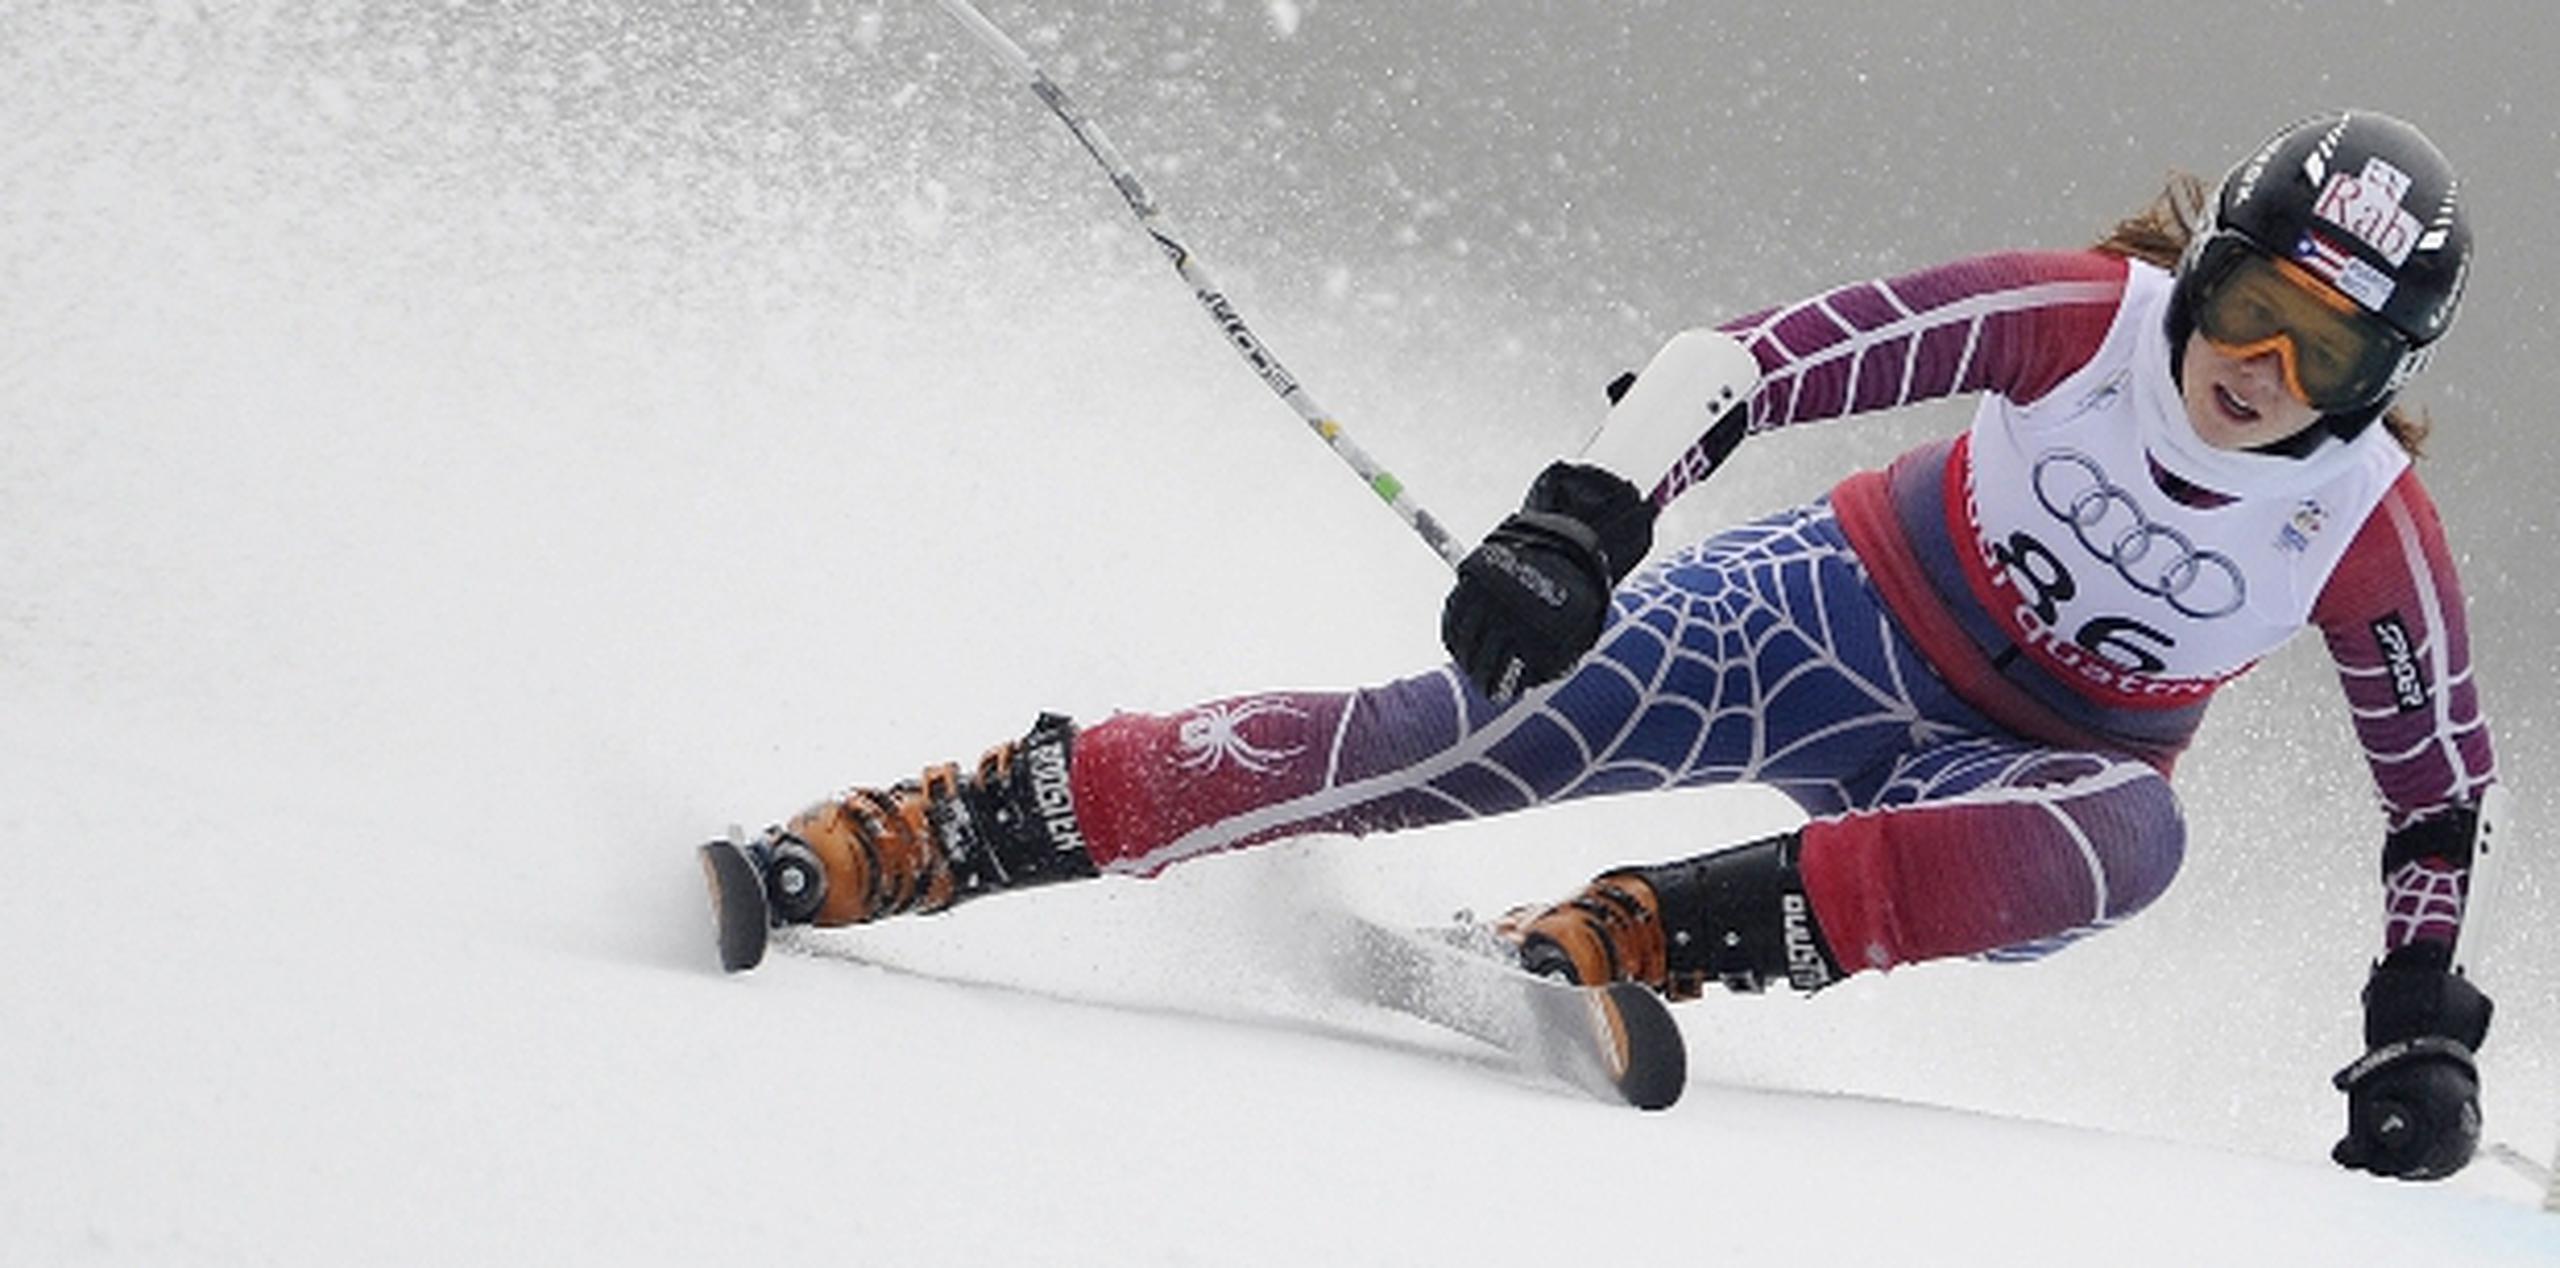 kristina Krone,  nacida en Puerto Rico y criada en Colorado, representó a la Isla en los pasados tres Mundiales de esquí alpino.   (AFP / Archivo)